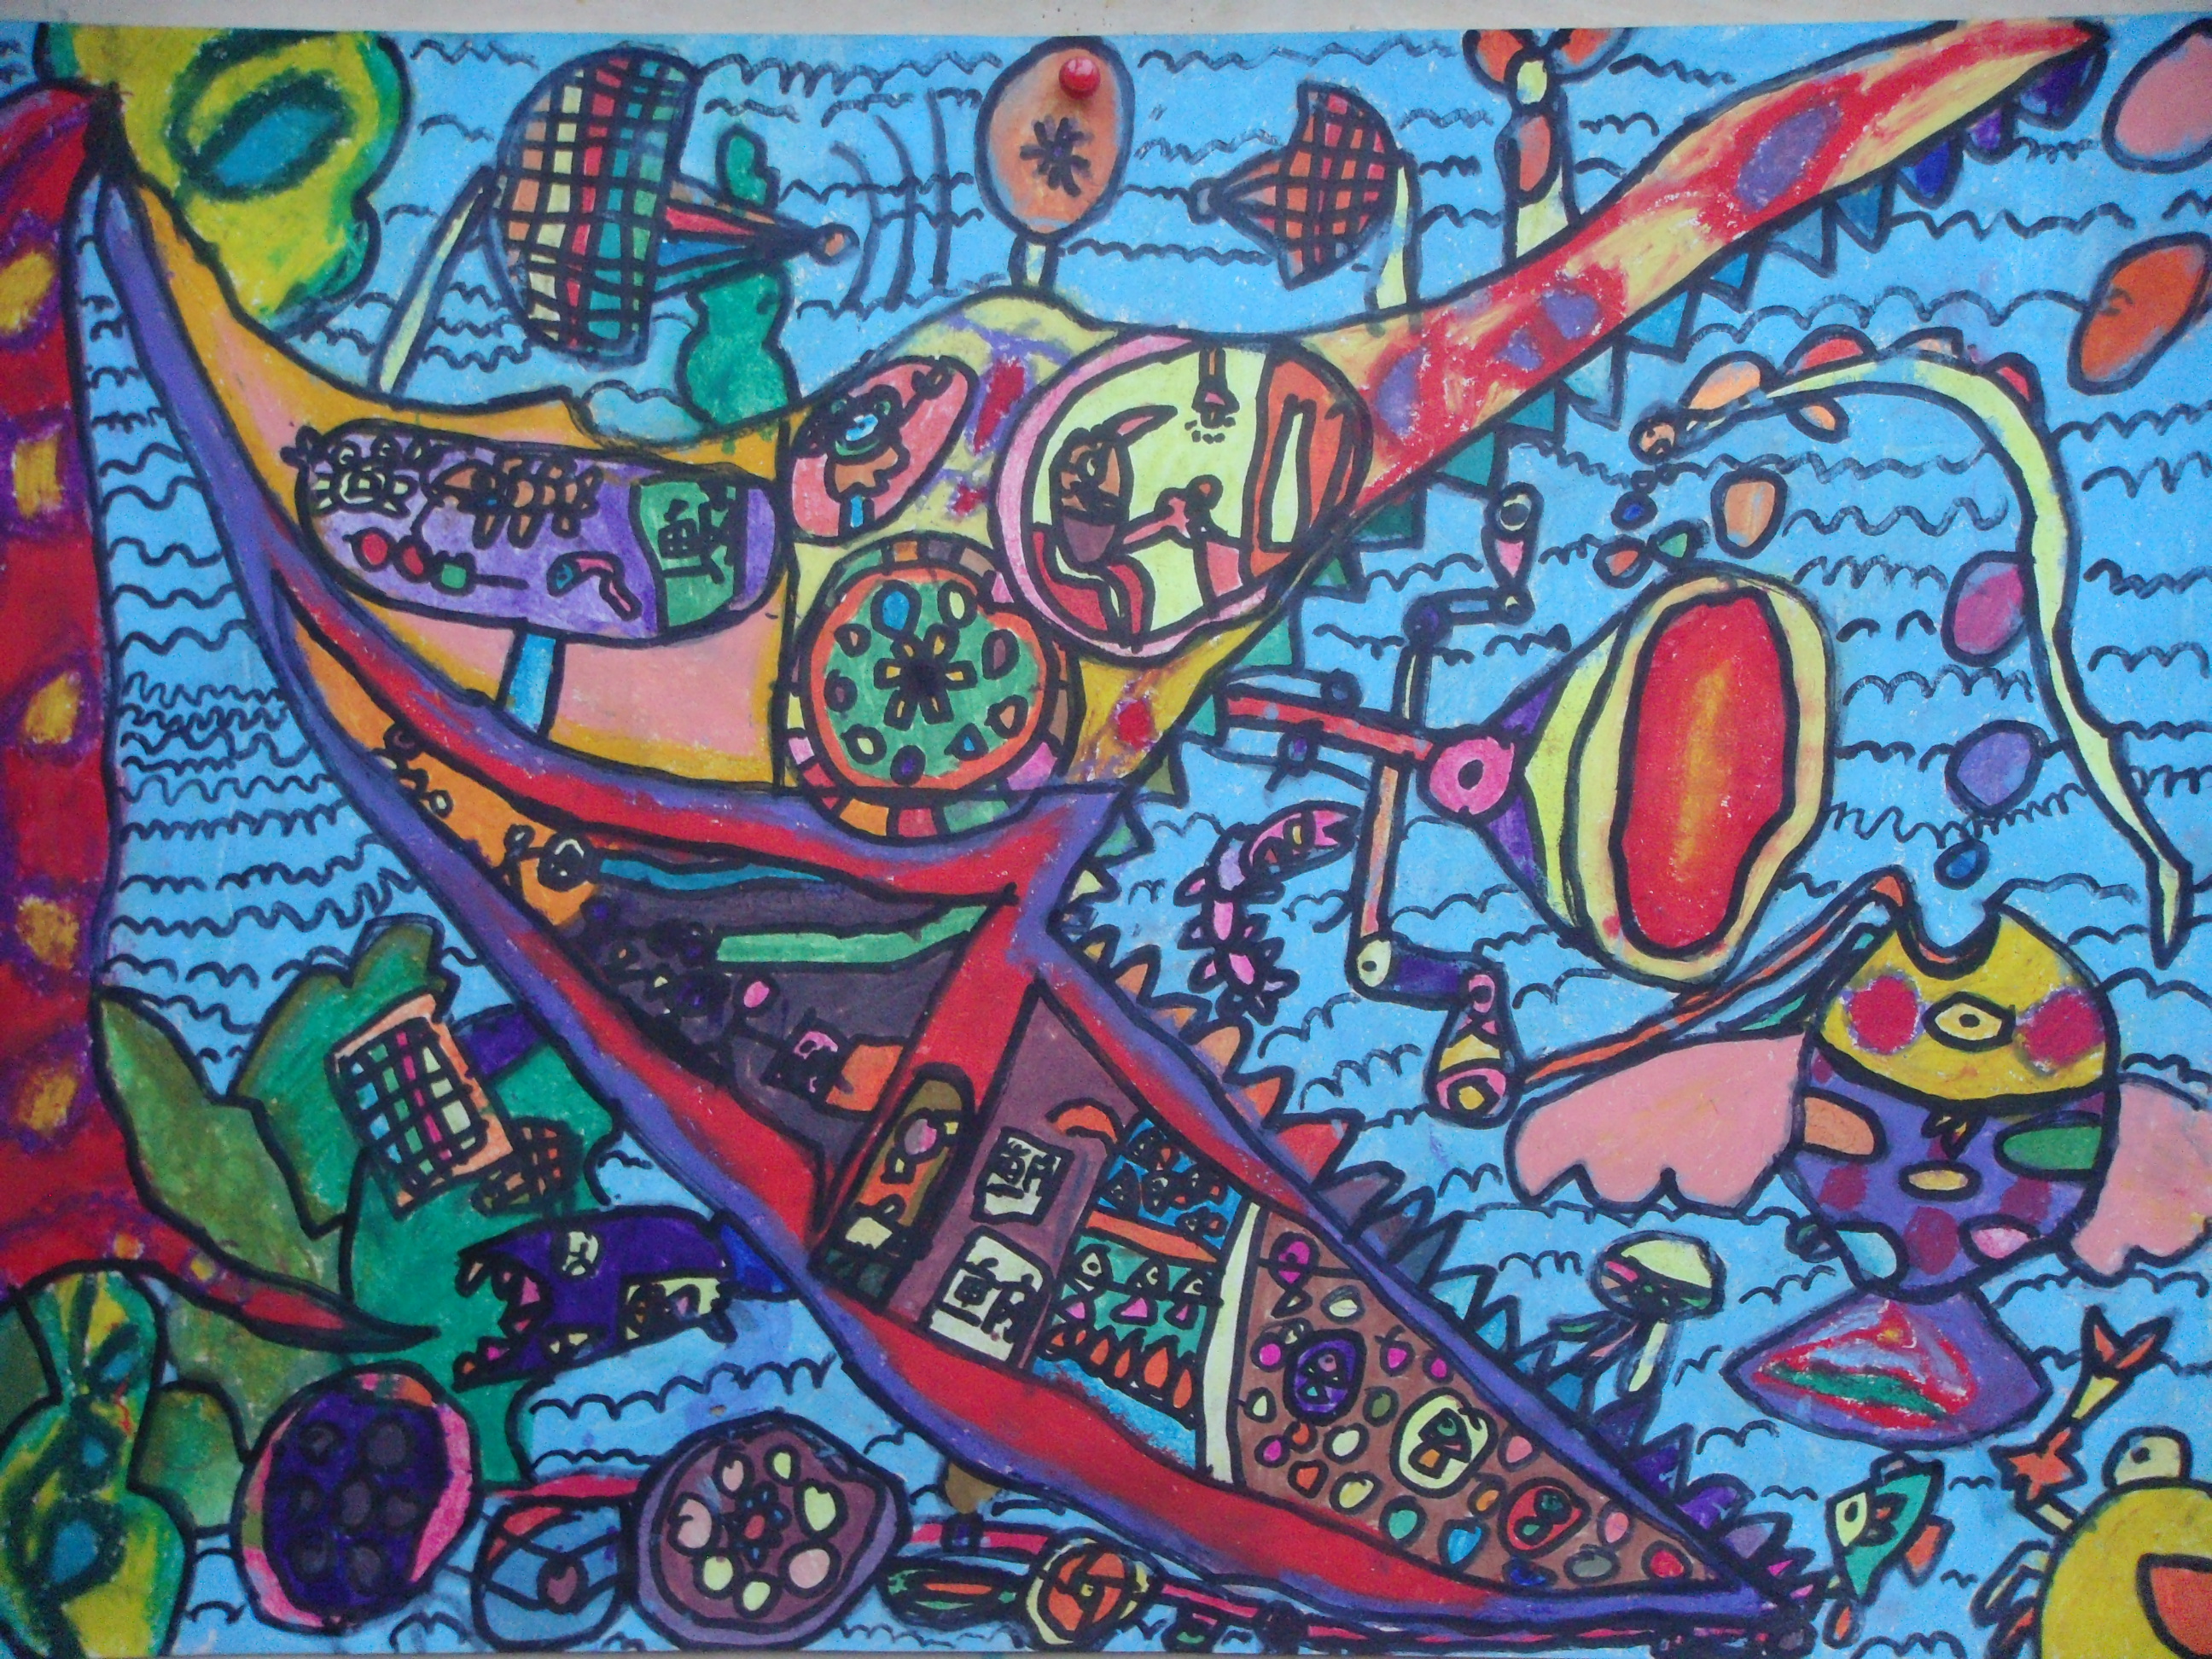 儿童画作品欣赏:儿童油画棒作品电子捕鱼船